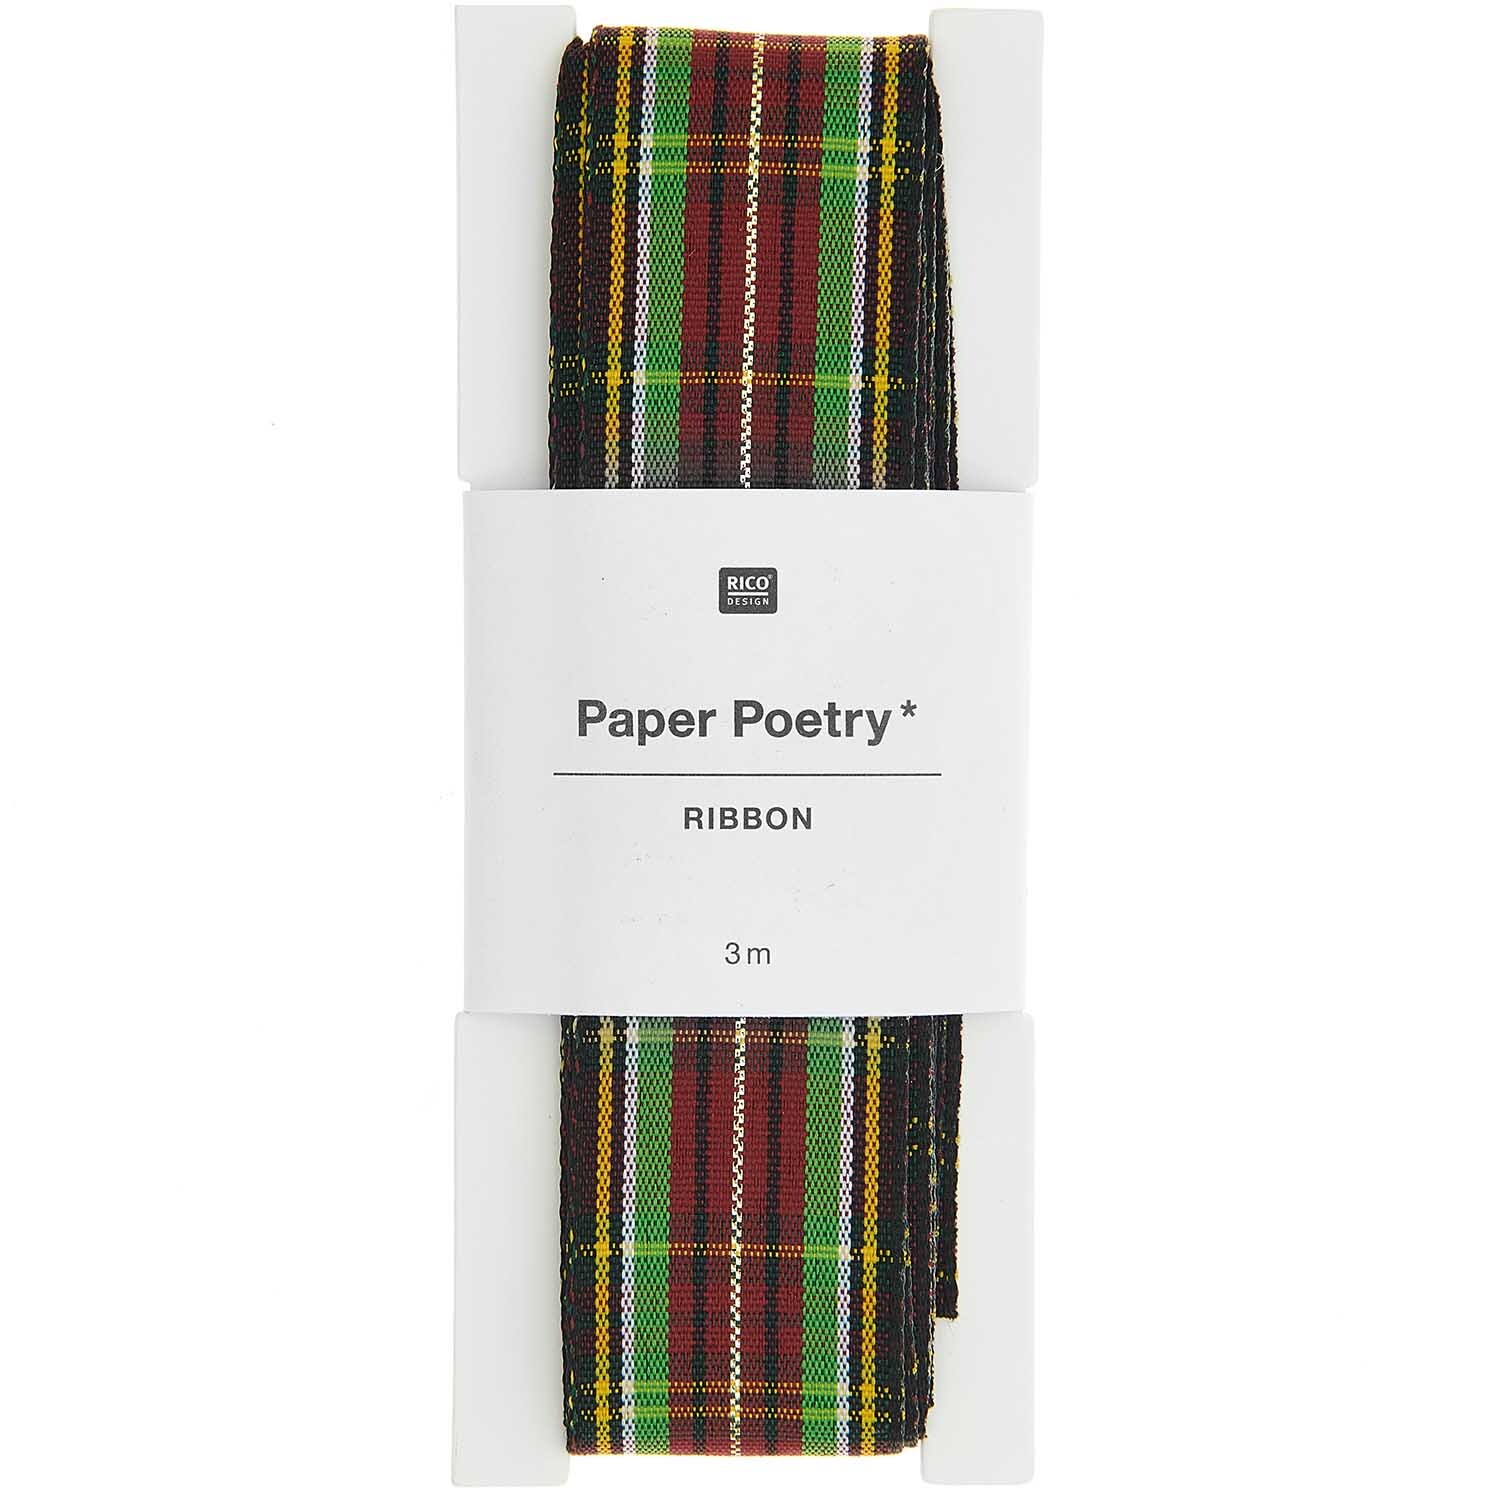 Paper Poetry Karoband schwarz-gelb-grün-rot 25mm 3m